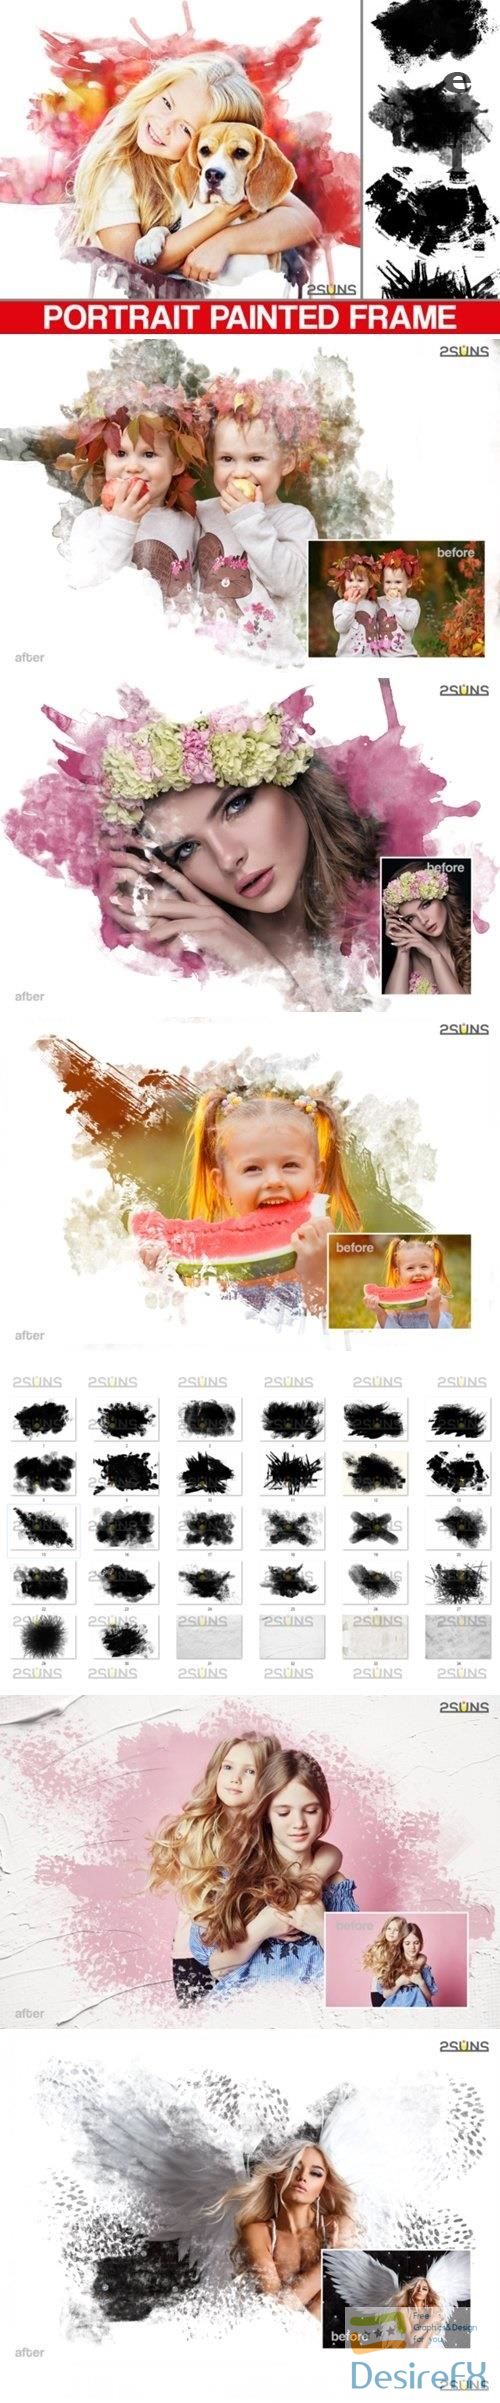 30 Beautiful portrait paint masks, photo frame, Photoshop overlay - 521253